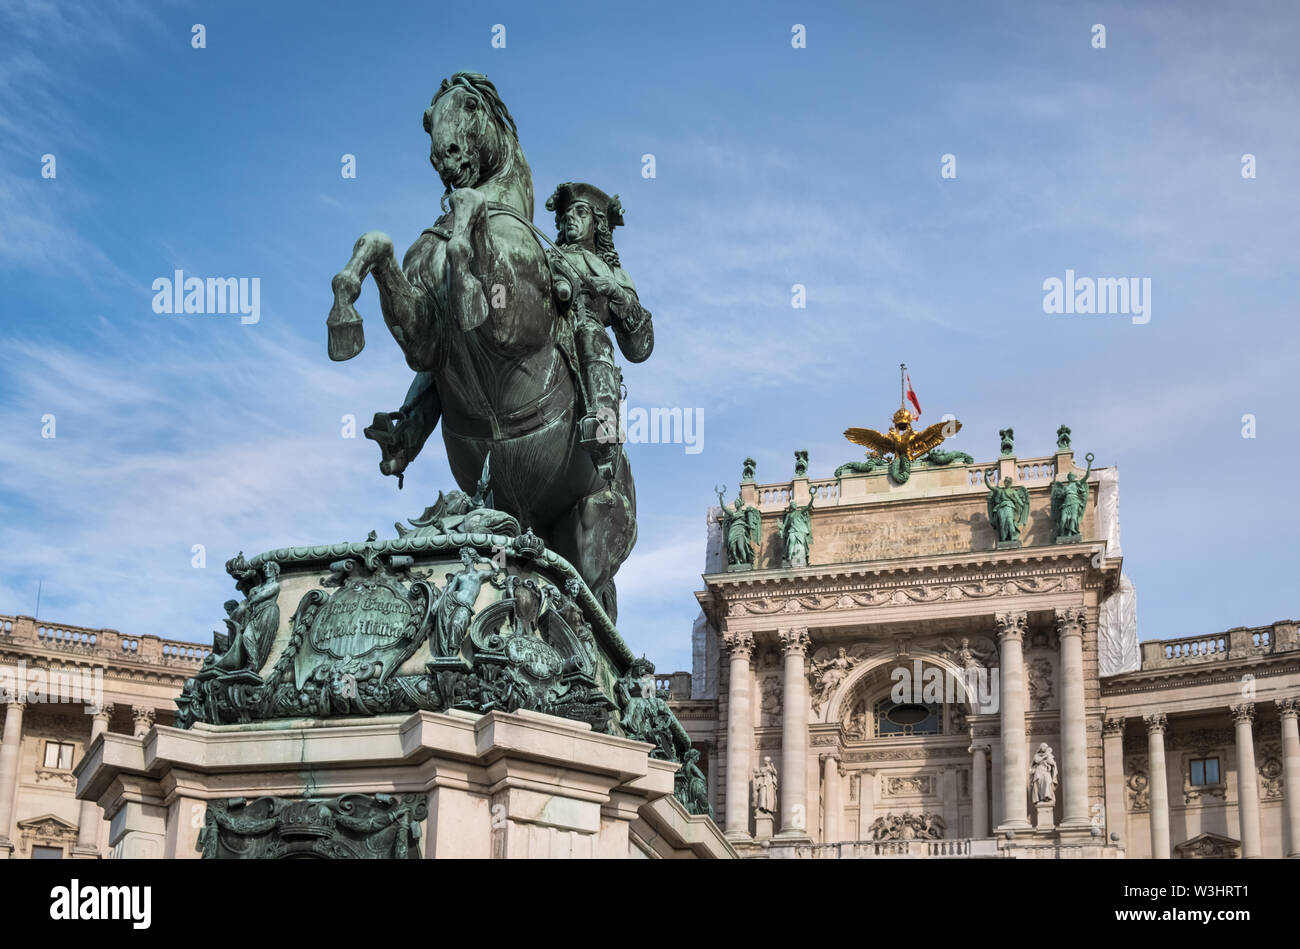 Il principe Eugenio di Savoia statua equestre, Heldenplatz (Piazza degli Eroi) nella parte anteriore del Palazzo di Hofburg a Vienna, in Austria Foto Stock